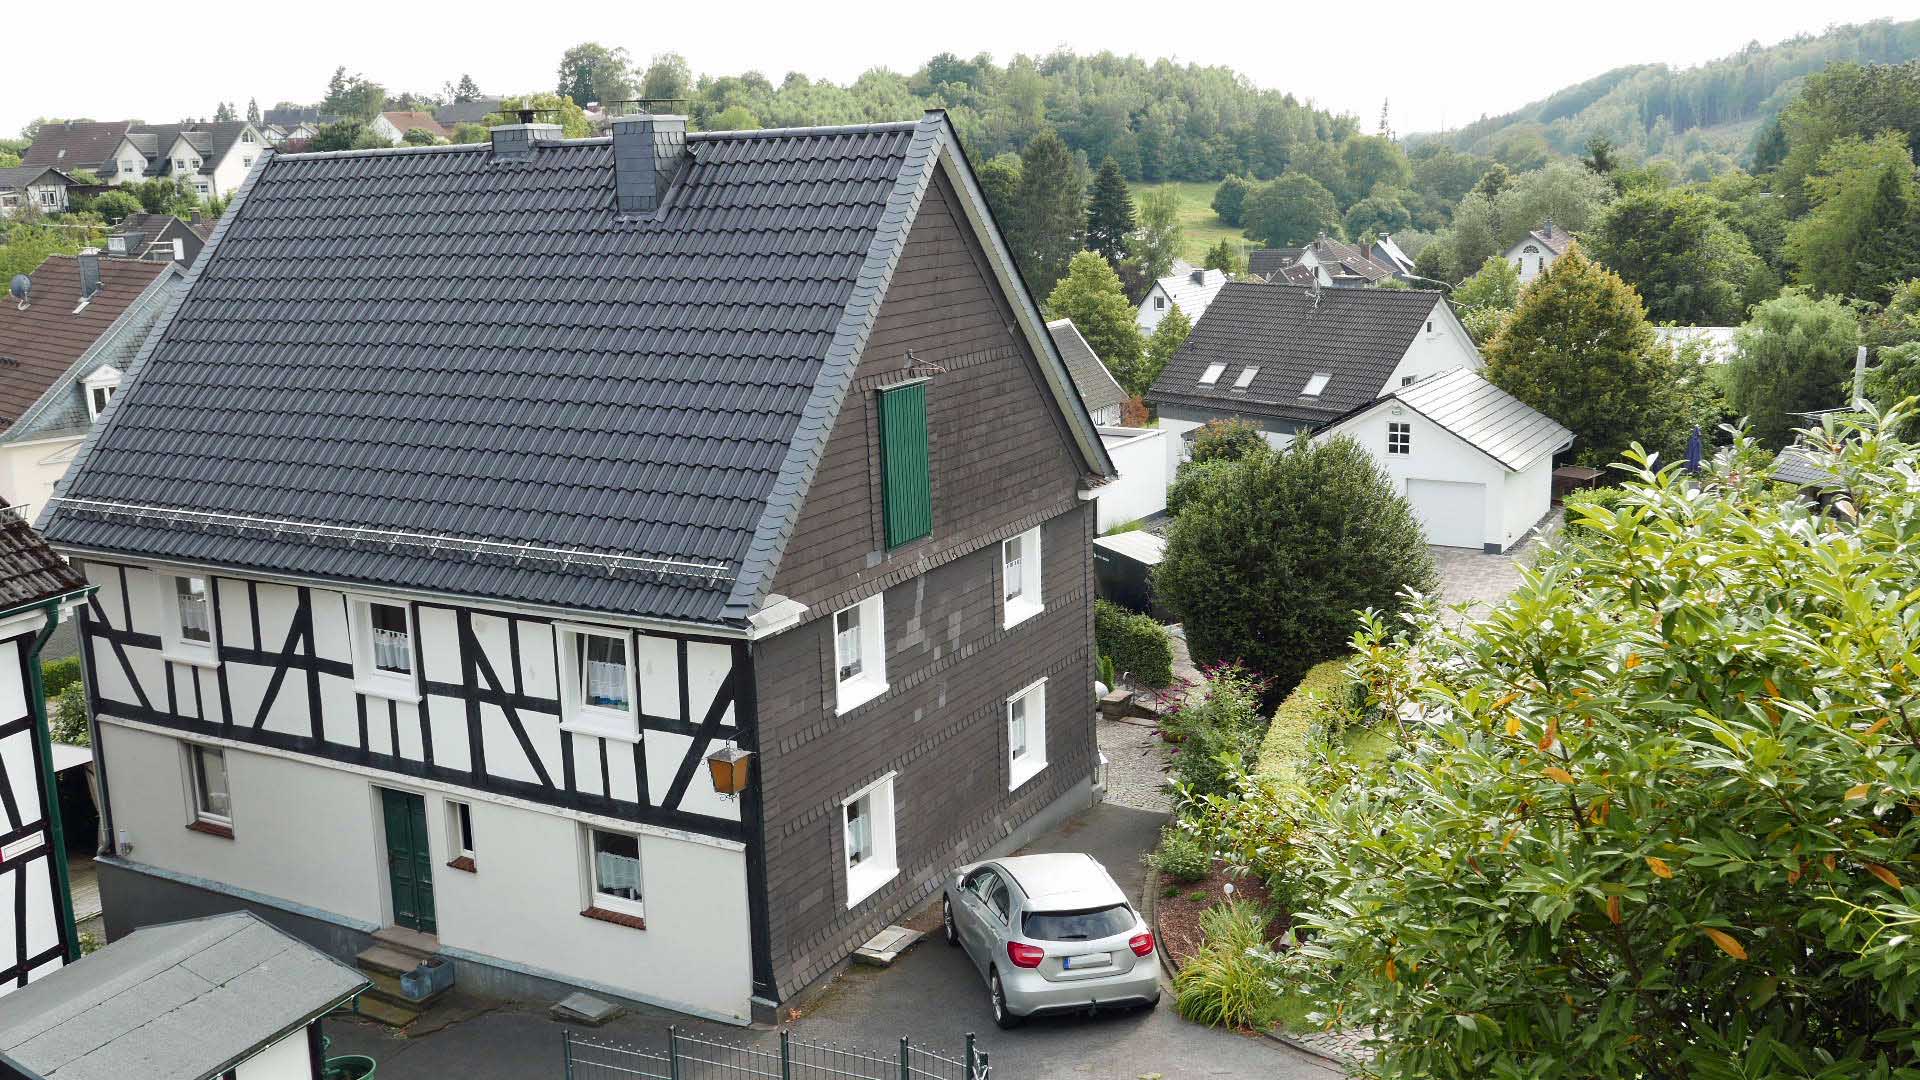 Eckenhagen: Gutbürgerliches, gemütliches Fachwerkhaus mit Garten, Hausrückseite mit Nebeneingang